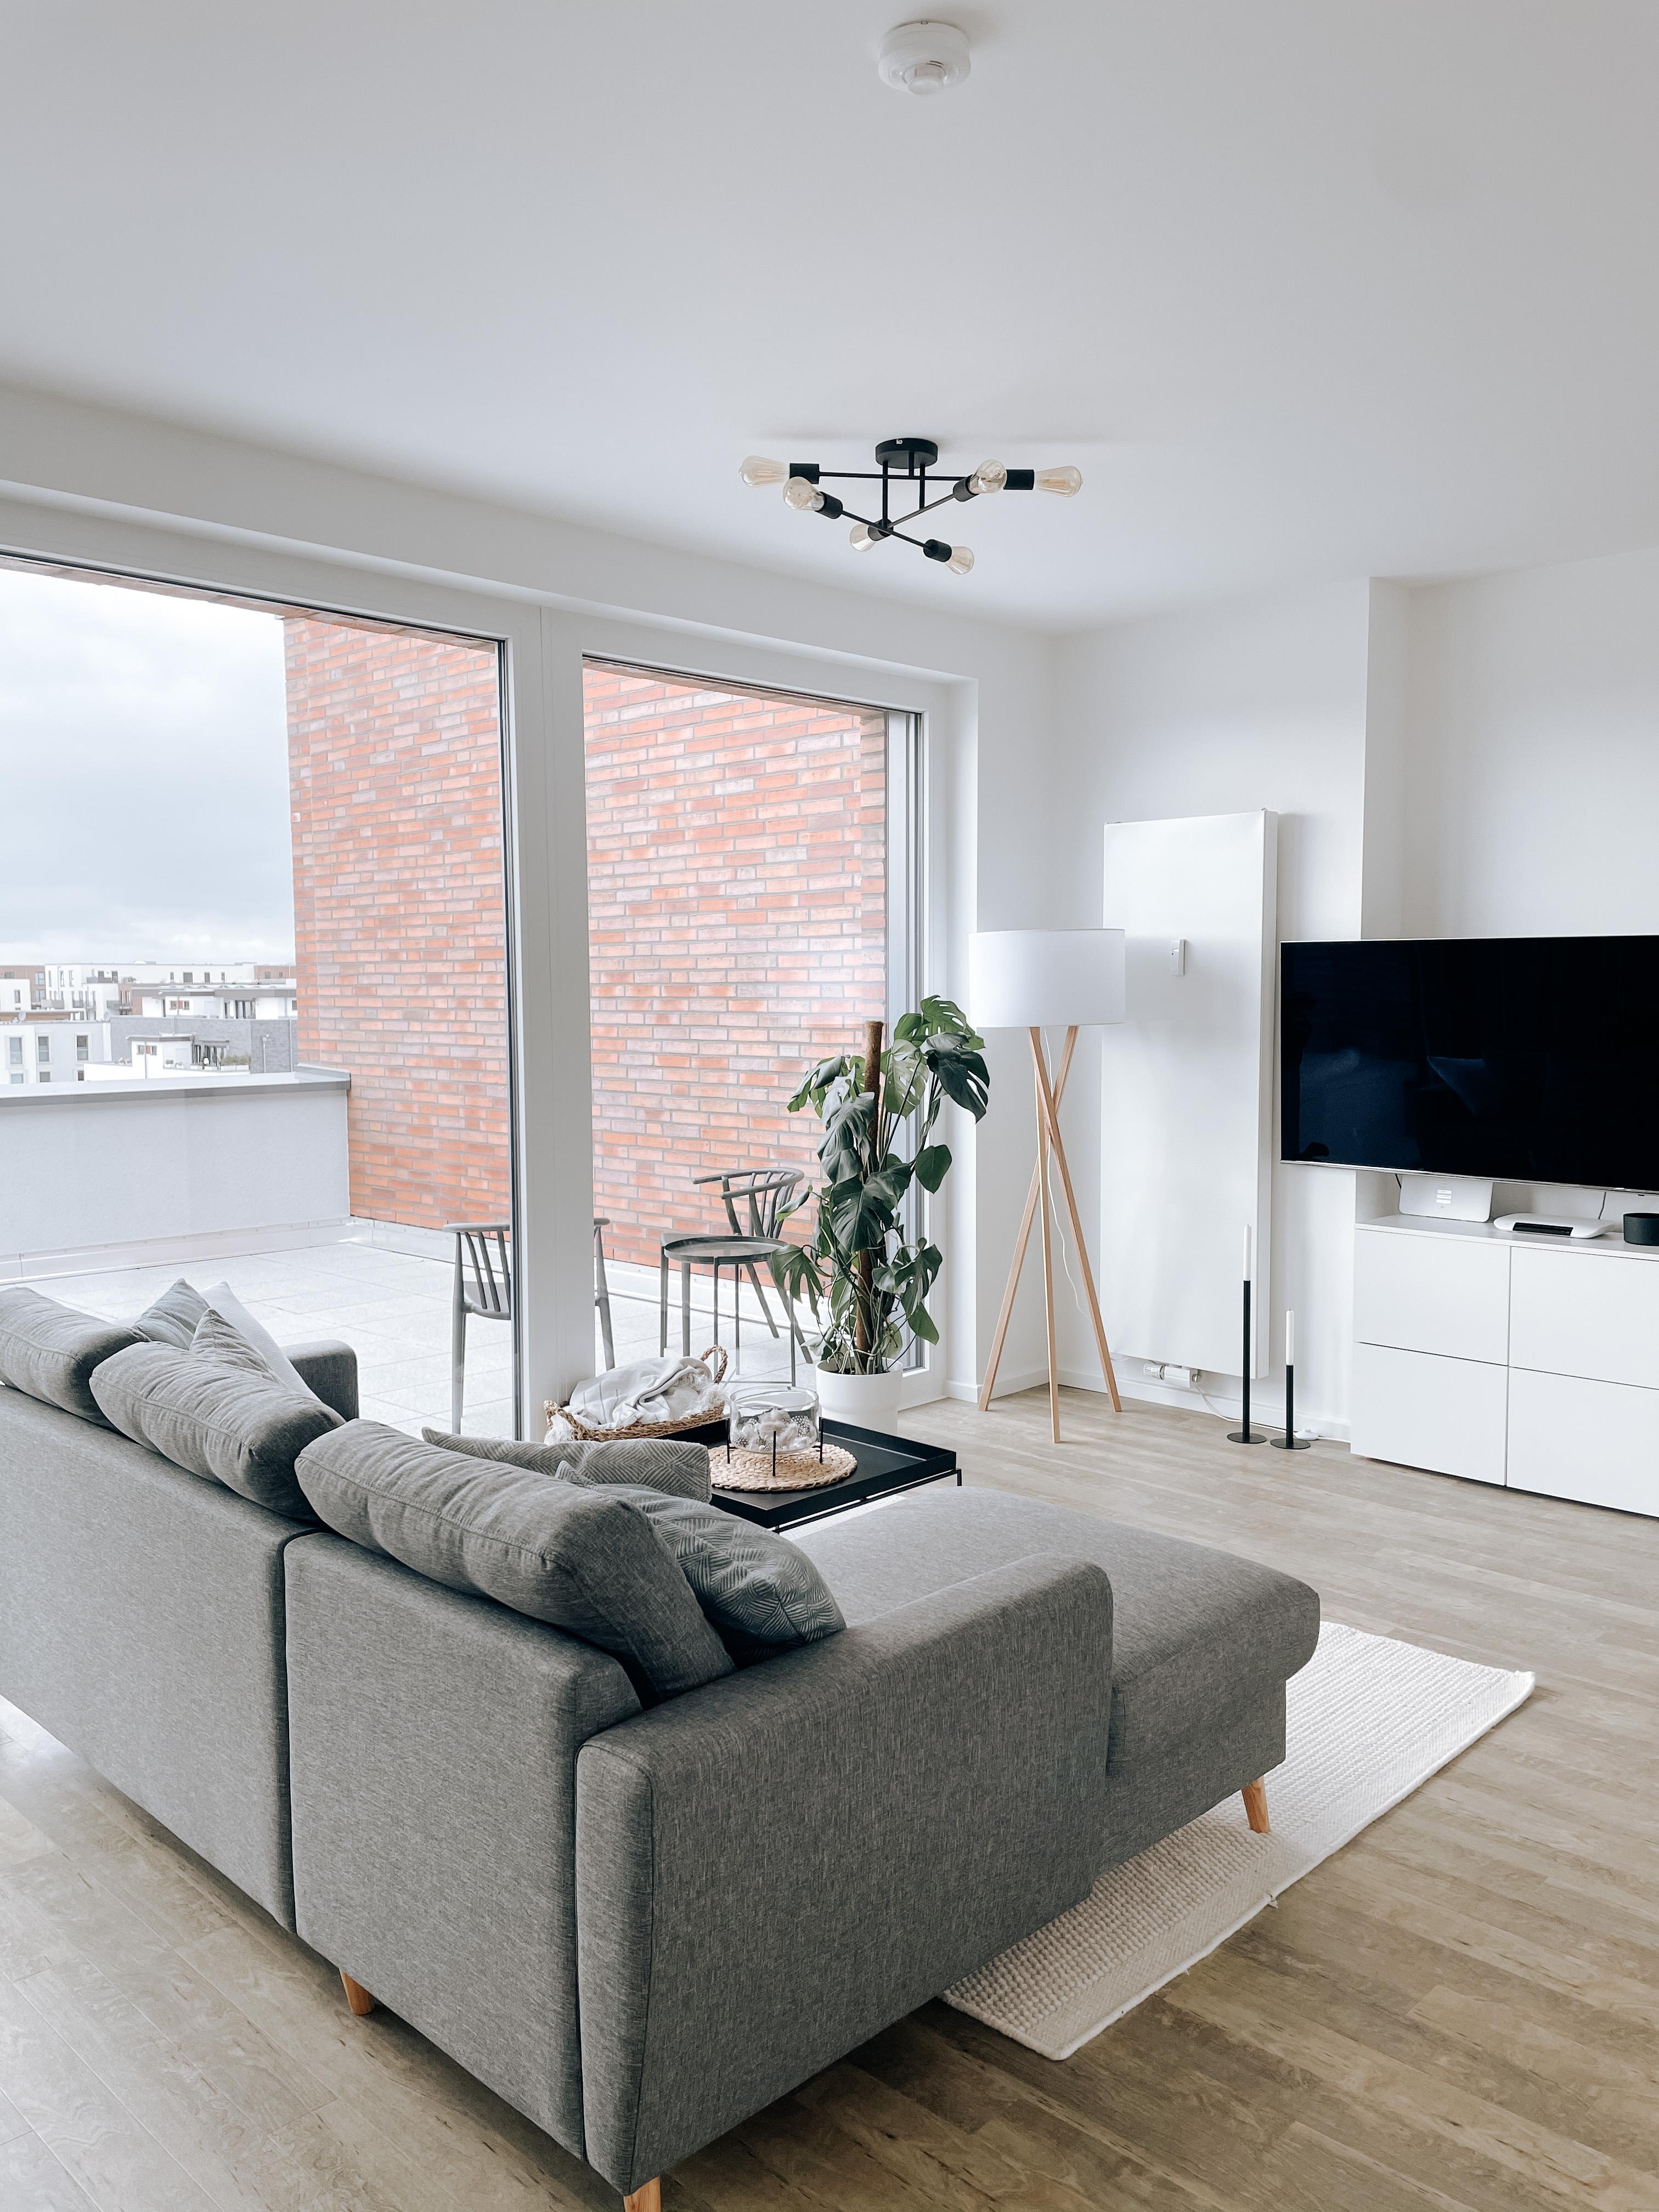 Neue Wohnung😍 #couchstyle #livingroom #dachterrasse #living